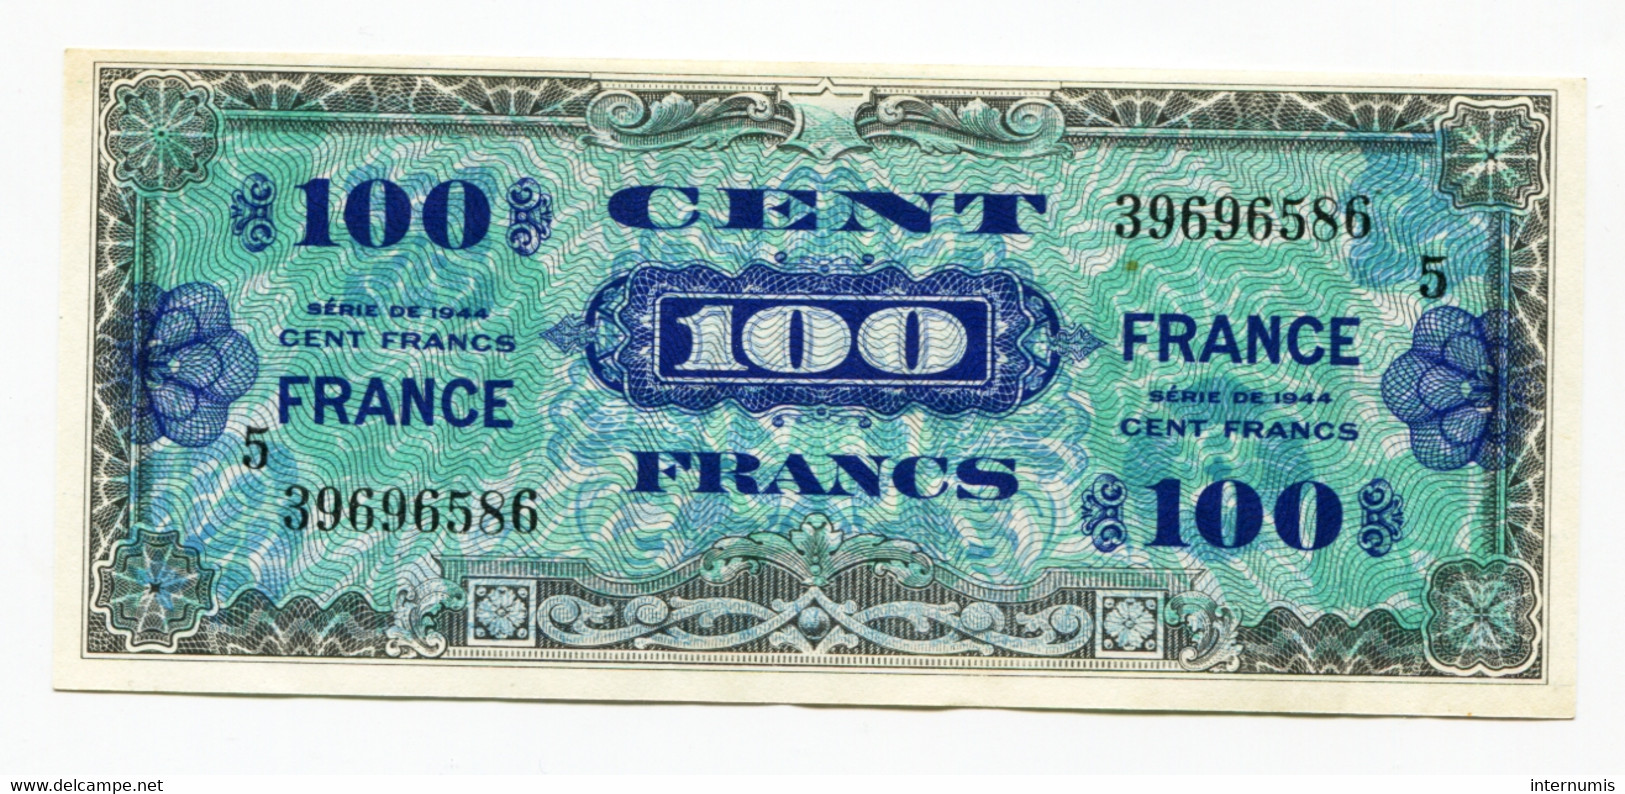 France, 100 Francs, FRANCE SERIE 5 IMPRESSION AMERICAINE, TYPE DE 1944, N° : 5-39696586, SPL (AU), VF.25.05 - 1945 Verso France